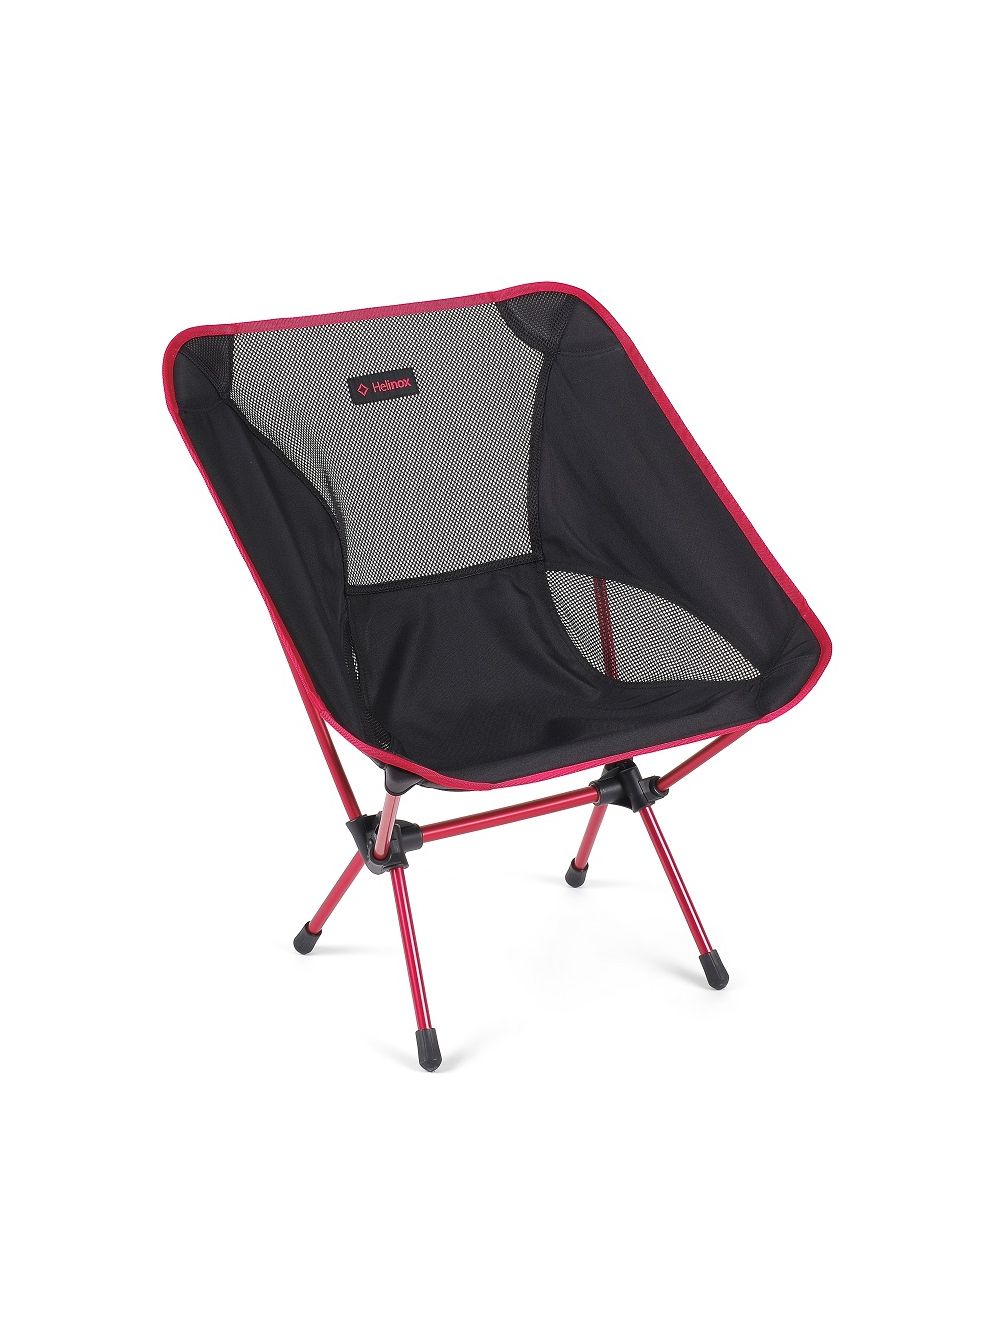 Vanaf daar Zonsverduistering Verplaatsing Helinox Chair One: compacte kampeerstoel – Ronald Adventure Shop